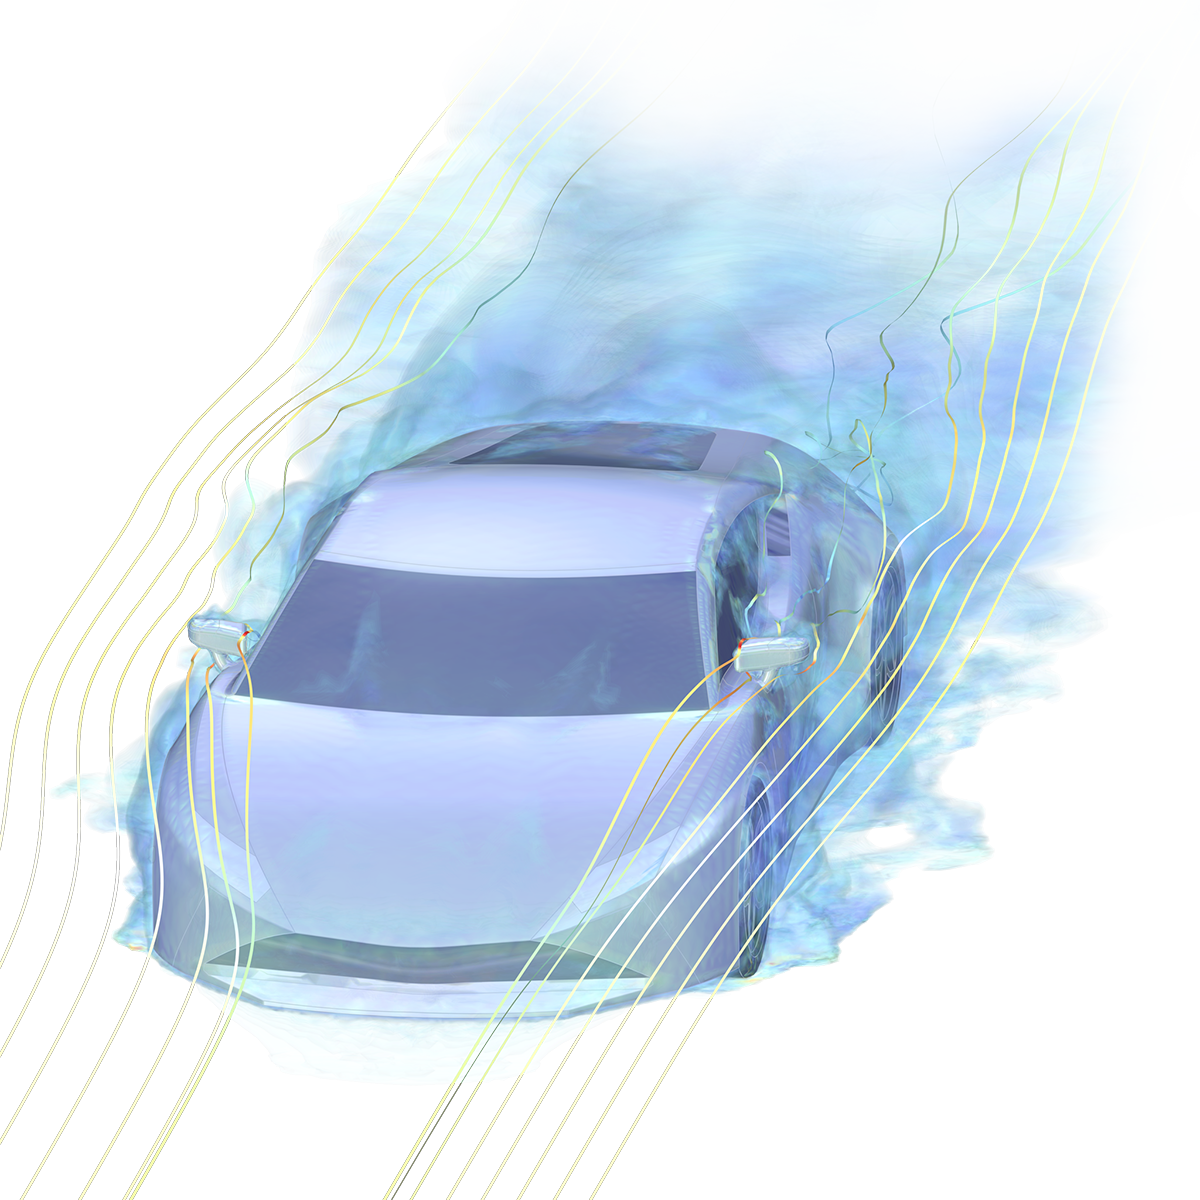 跑车模型，其中包含两个侧视镜和两个车门，黄色流线显示了汽车前部到后部的流场。